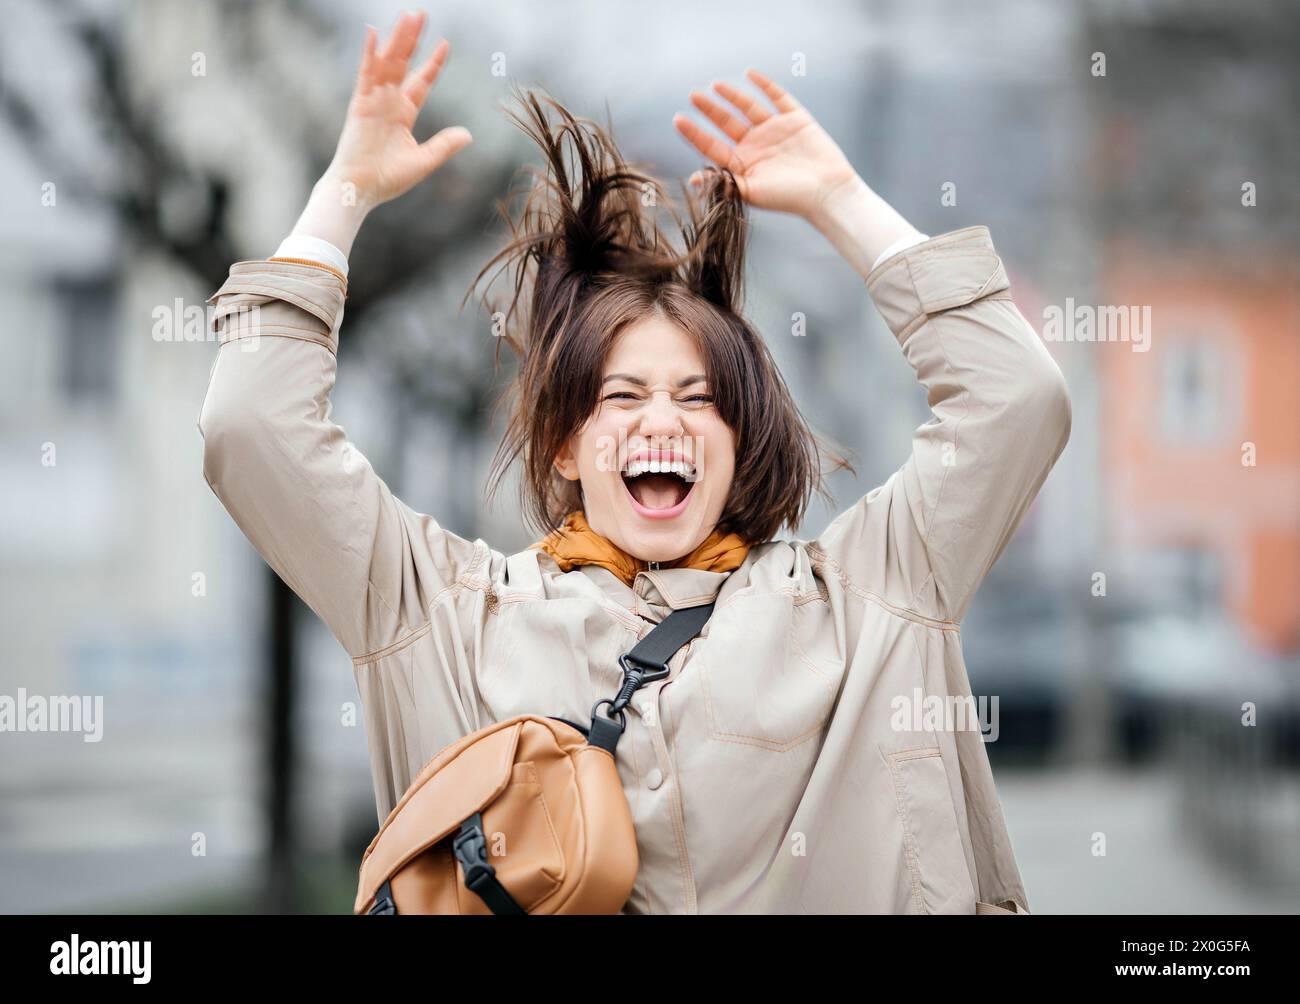 Euphorische Frau mit fröhlichem Ausdruck, Arme hoch, städtischer Hintergrund Stockfoto